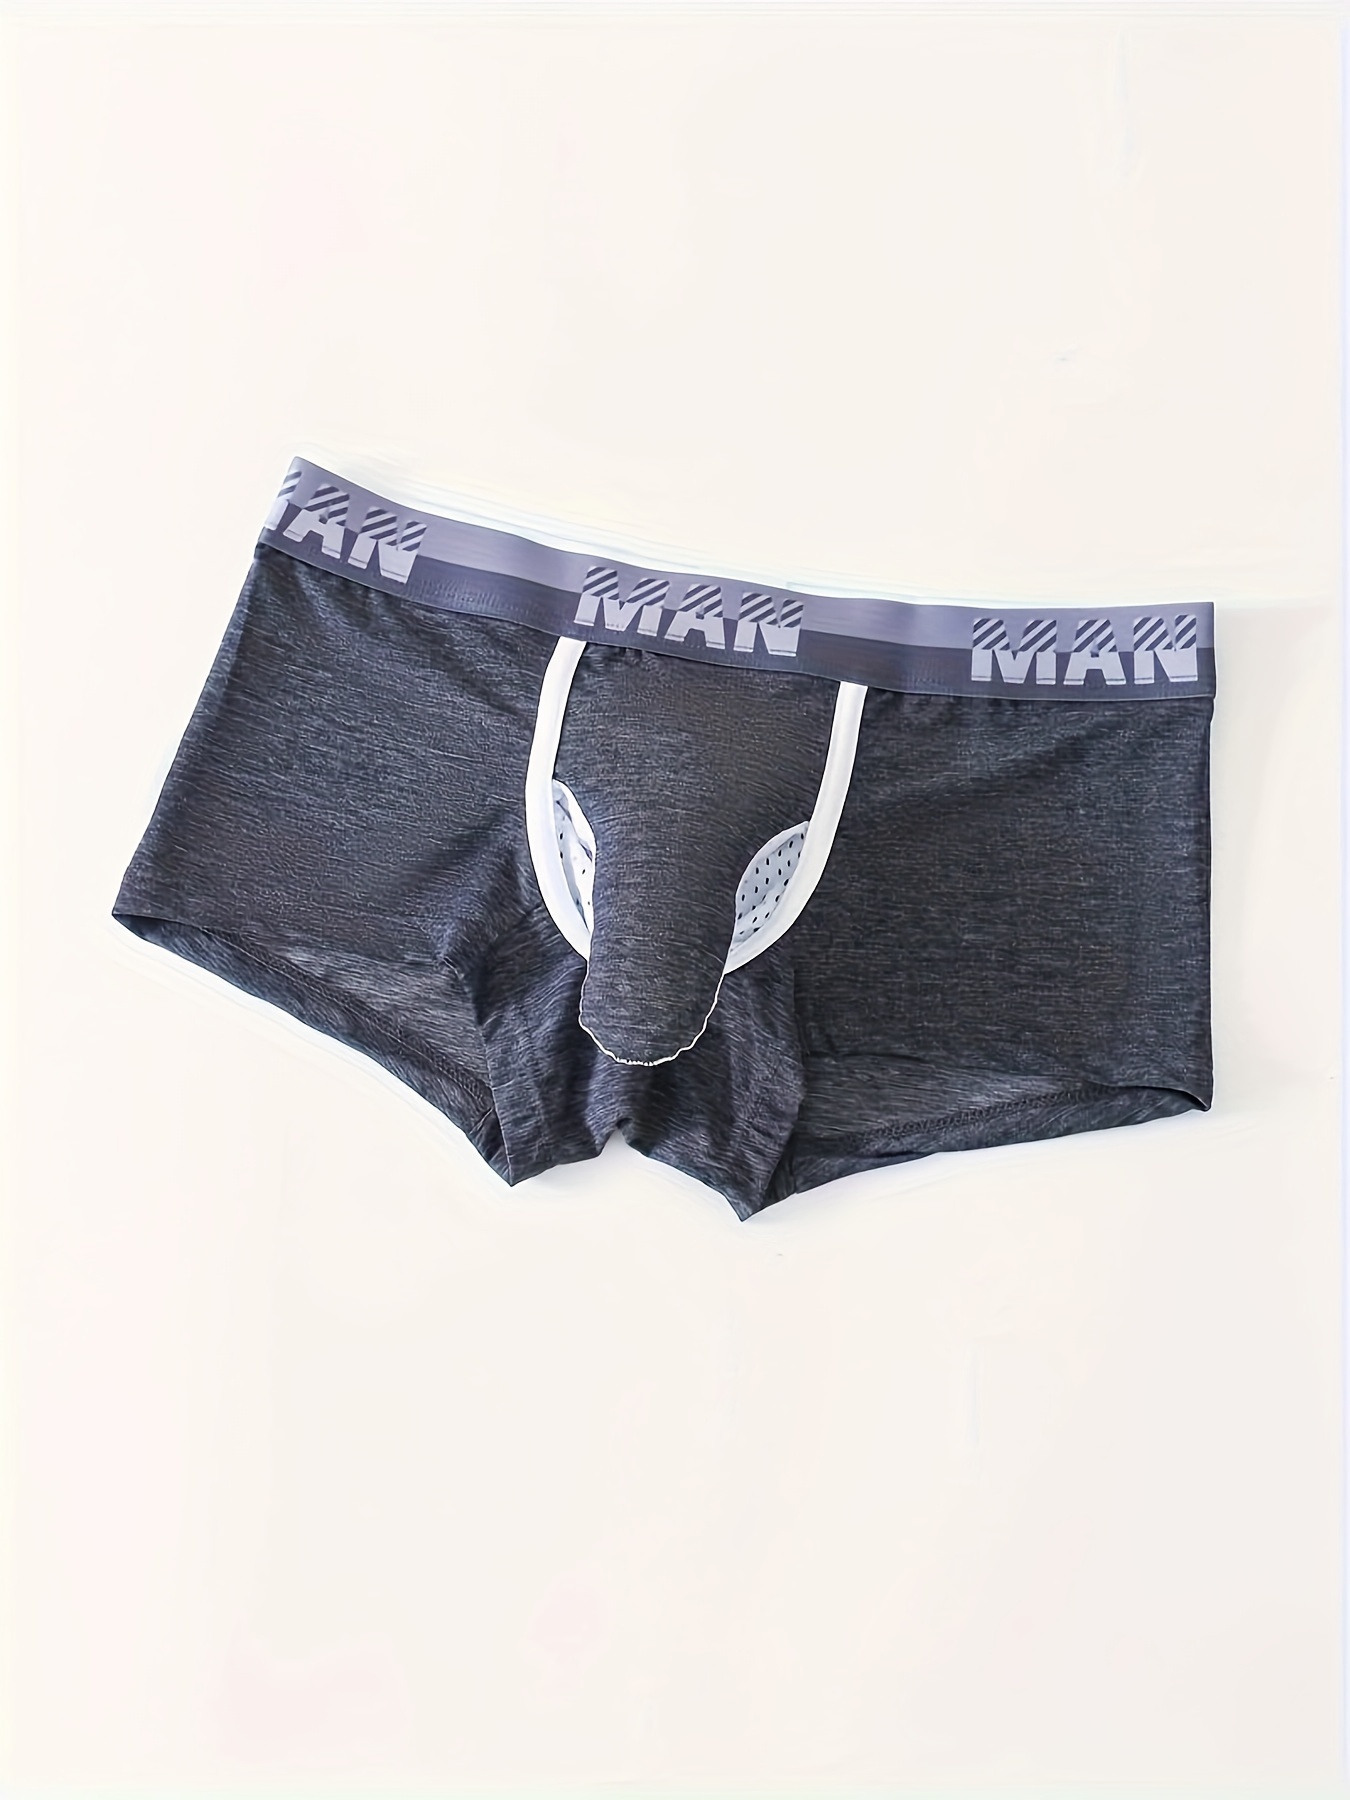 Elephant Trunk Underwear Men  Elephant Trunk Underwear Funny - Sexy Penis  Pouch - Aliexpress